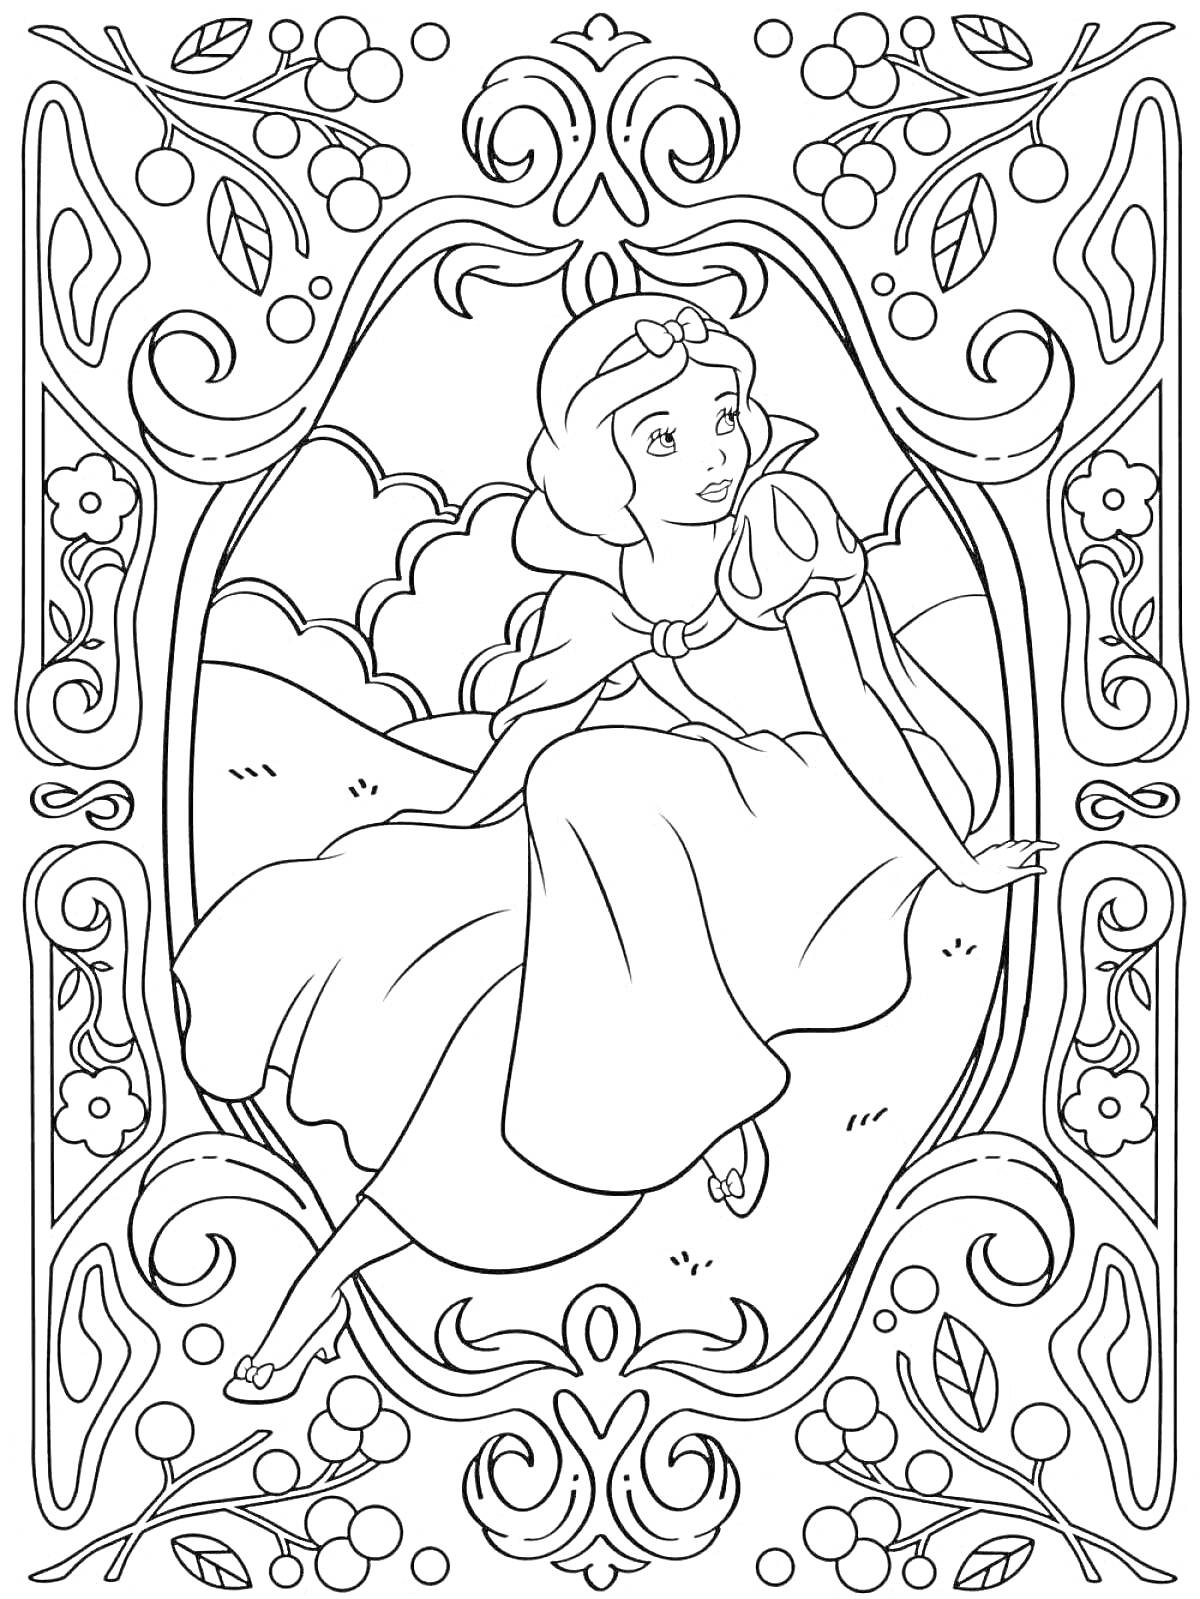 Раскраска принцесса в платье на фоне облаков с рамкой из вьющихся узоров, цветов и листьев